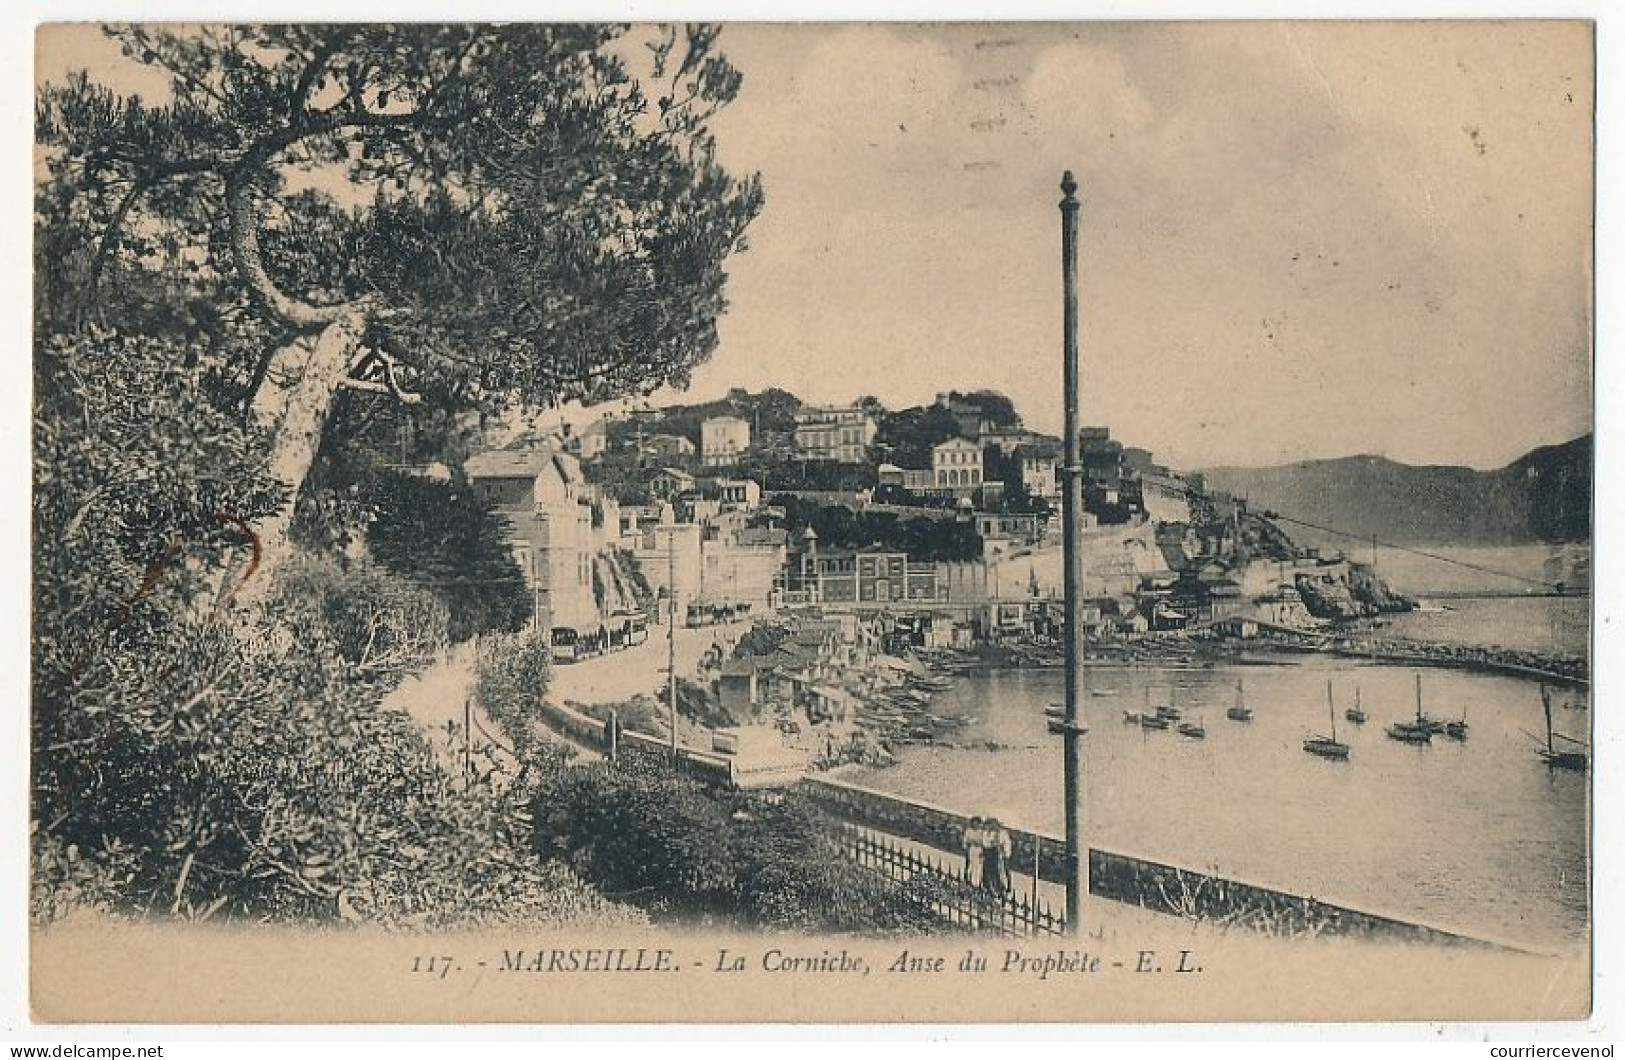 12 CPA de MARSEILLE (B du R) - Vieux Port, Centre Ville etc - 12 différentes, pp voyagées, T Bon état